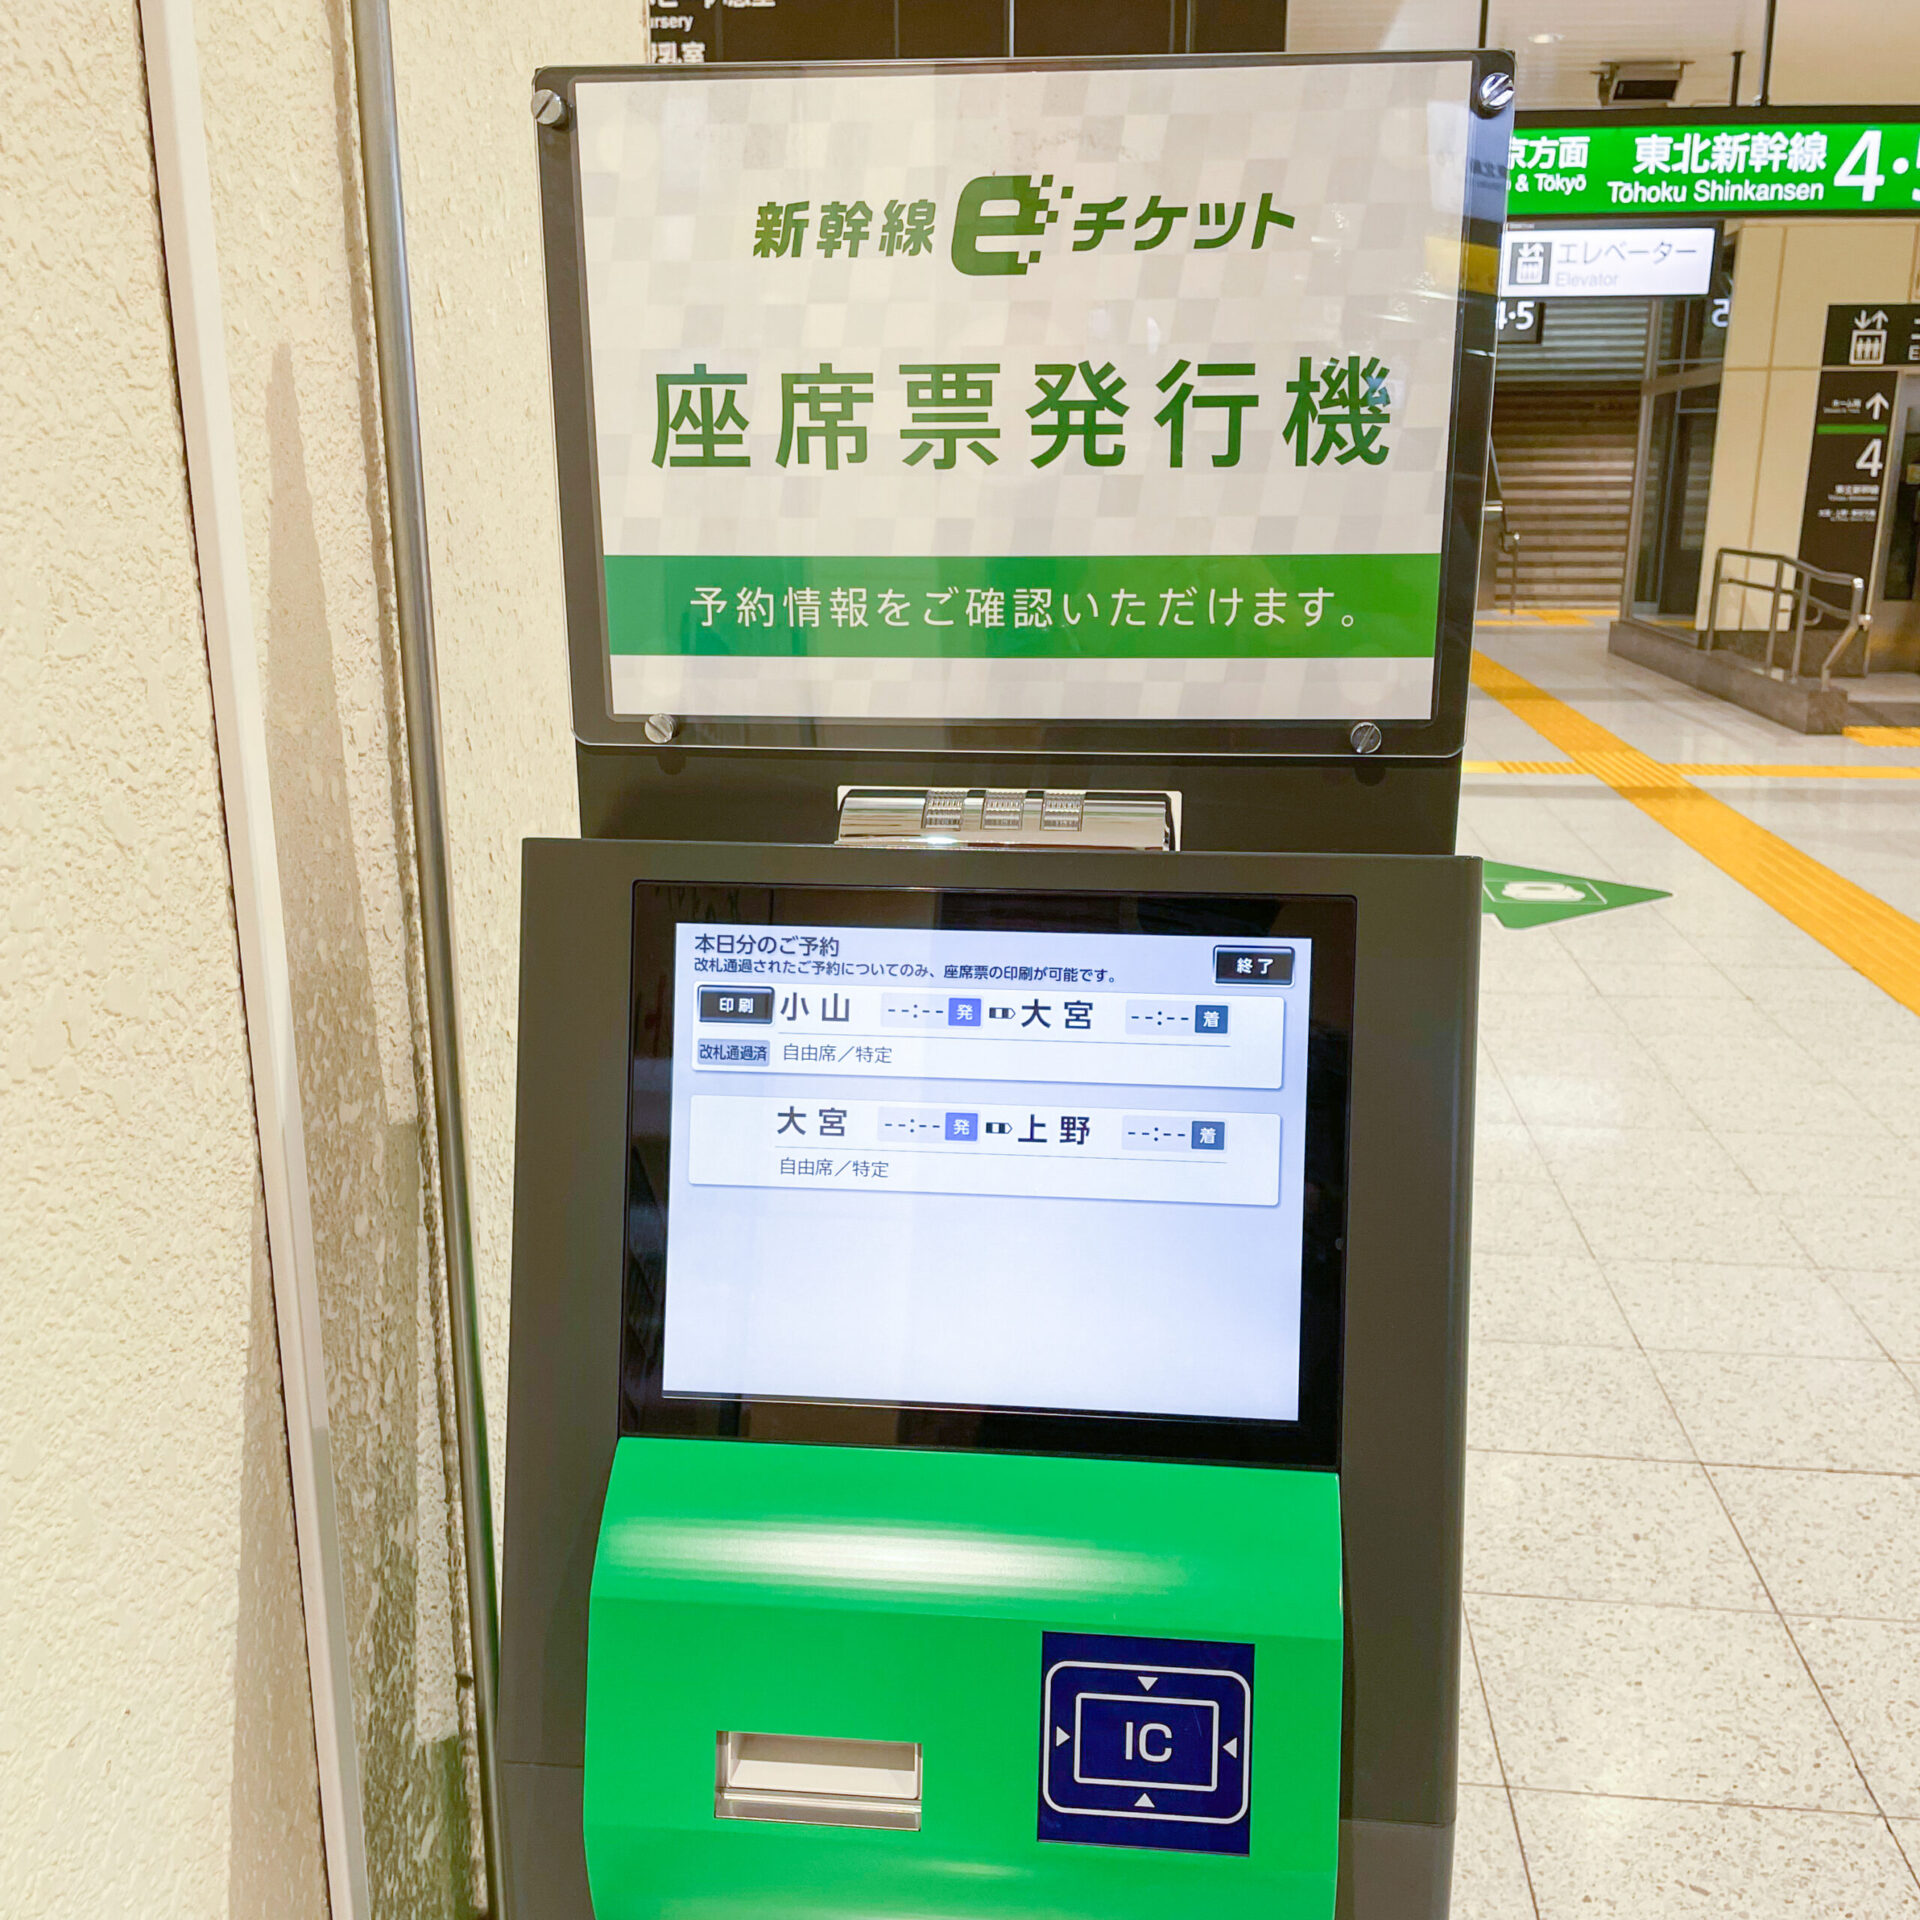 新幹線eチケットの座席票発行機のイメージ